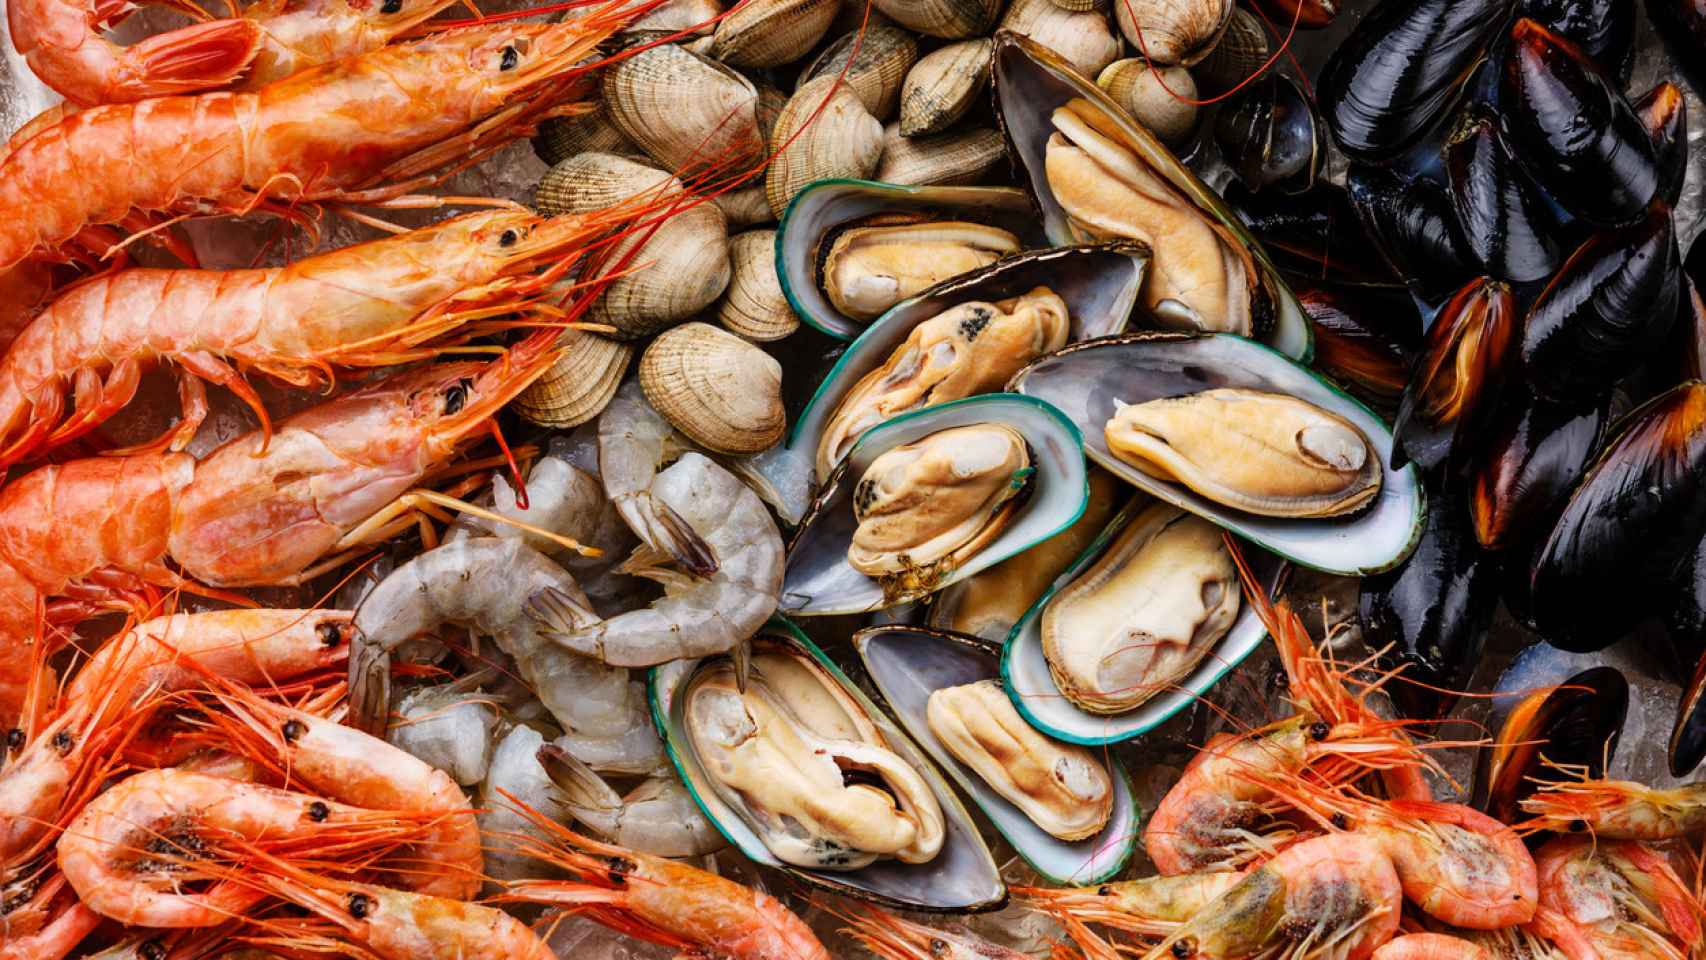 El restaurante de la costa asturiana al que tienes que ir si quieres probar buen pescado y marisco